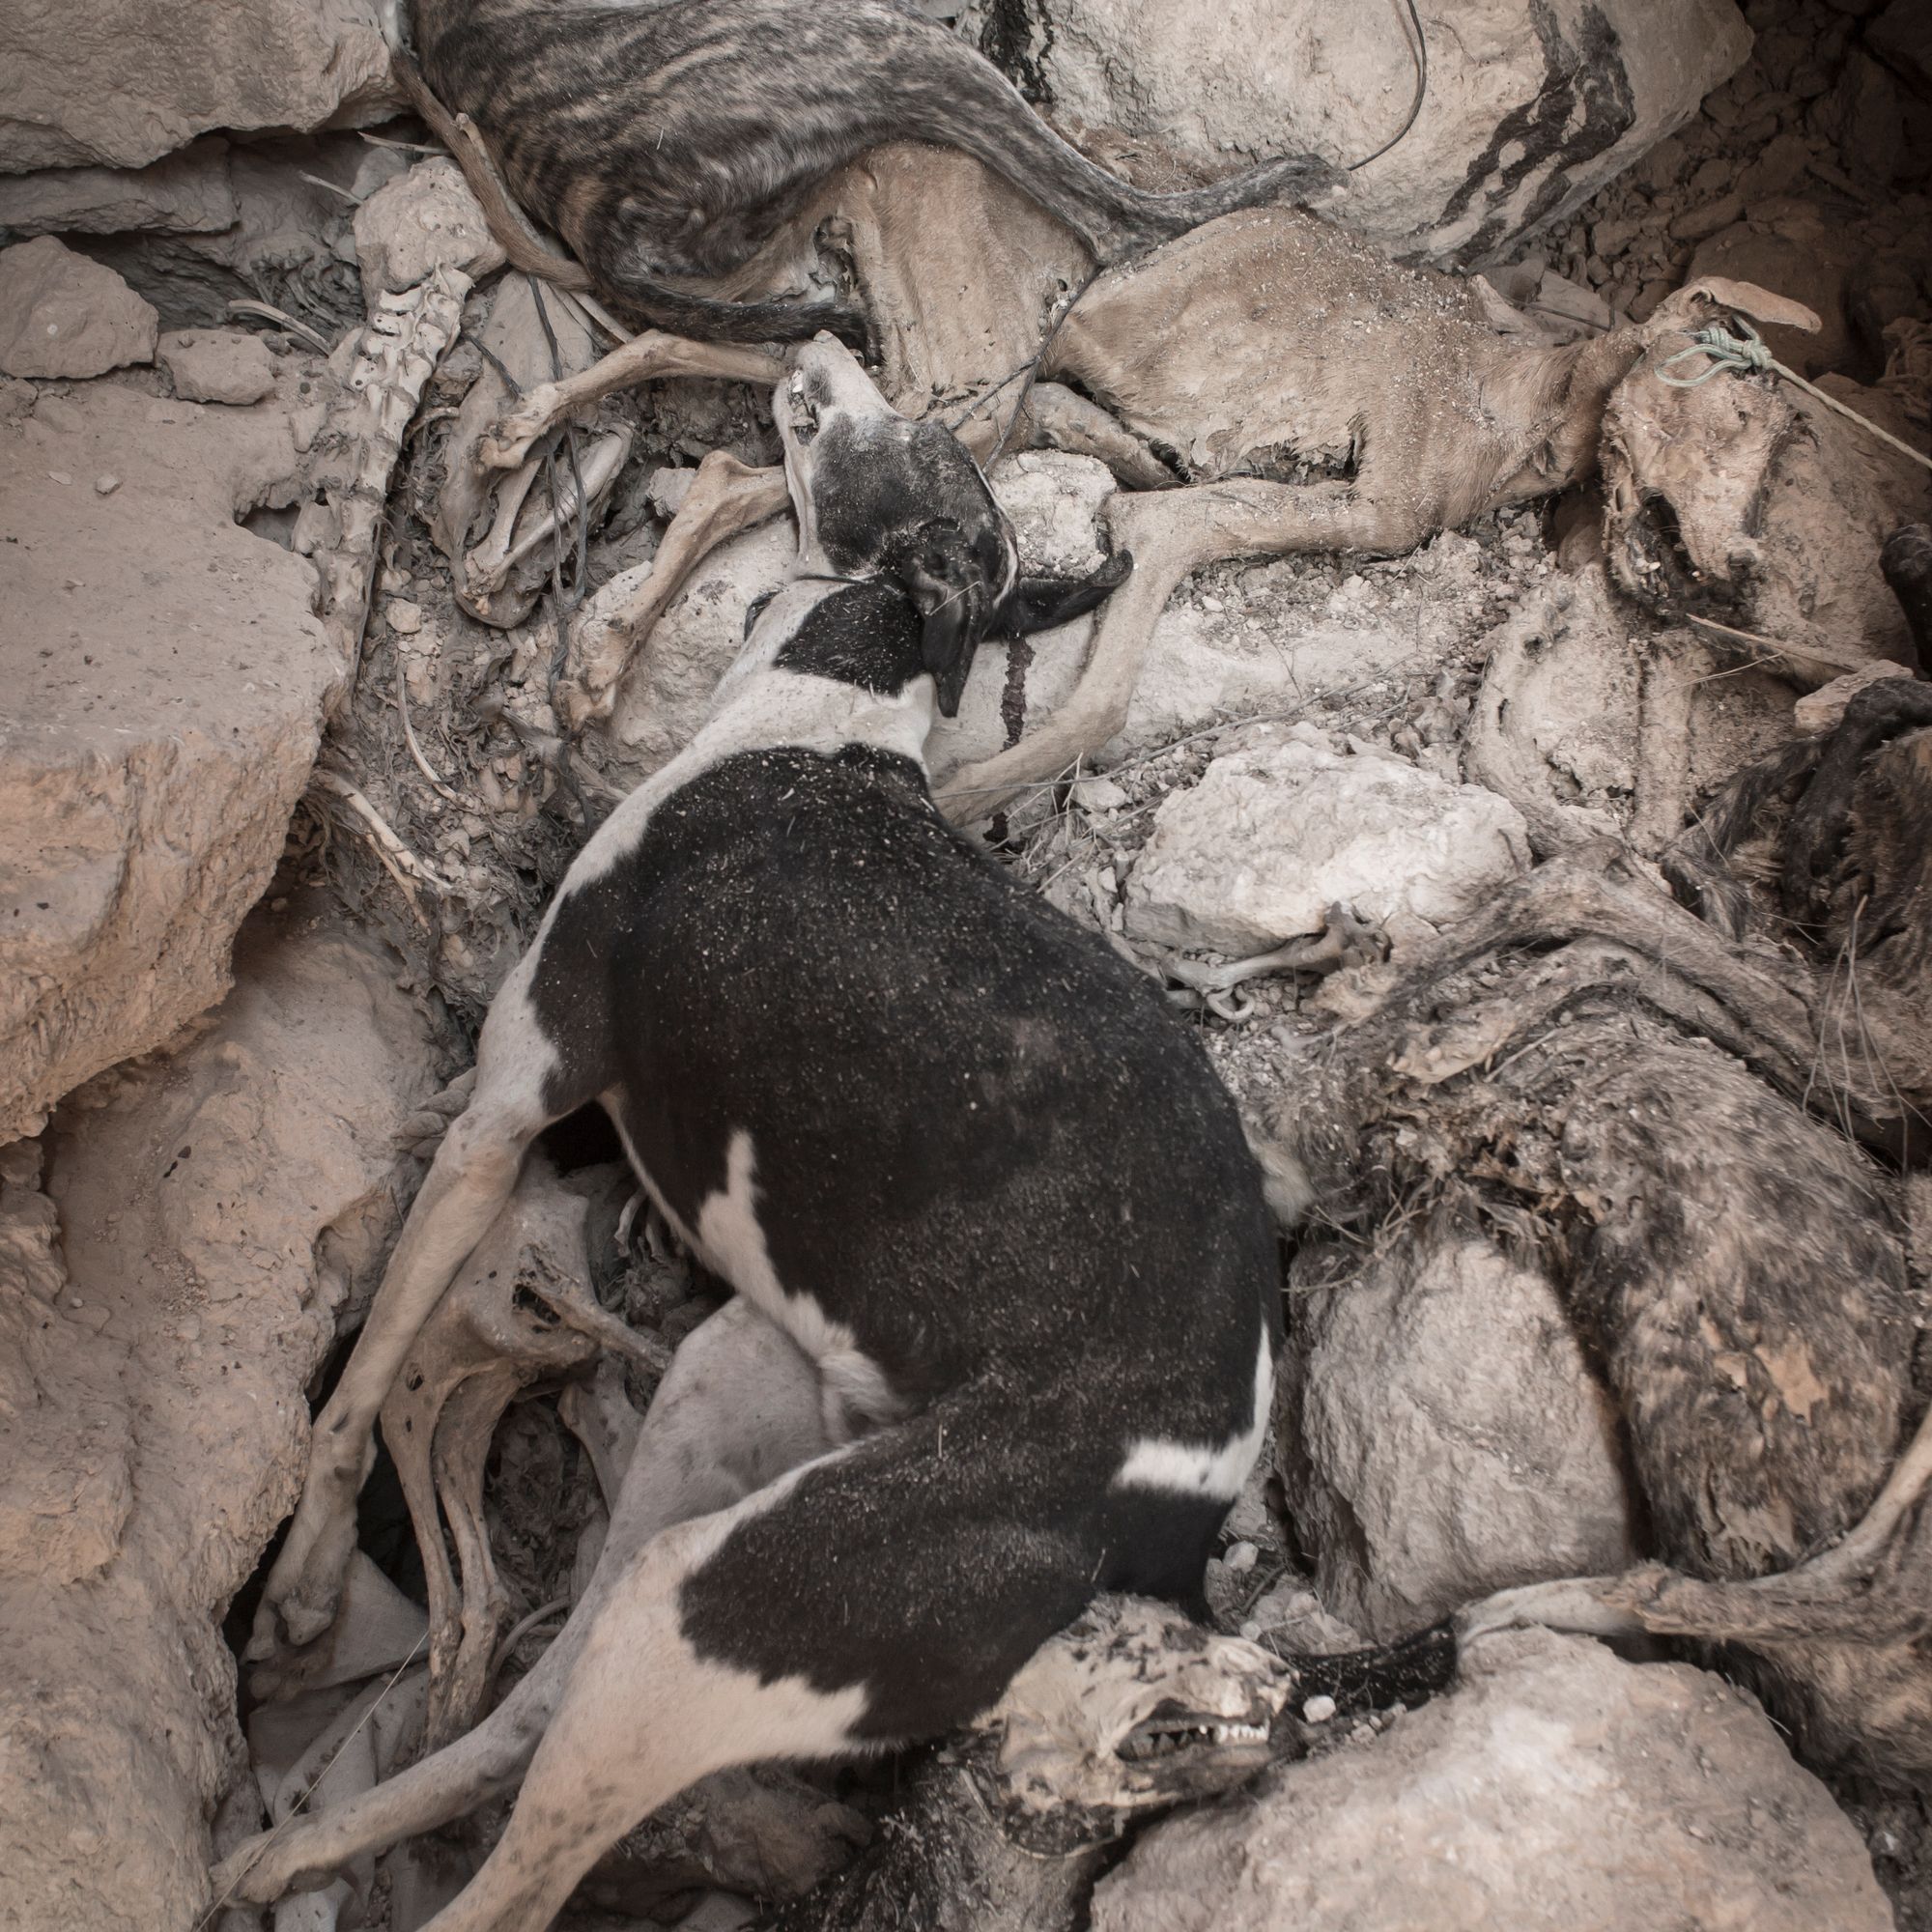 El gobierno Español quiere excluir a los perros de caza de la Ley de Bienestar Animal